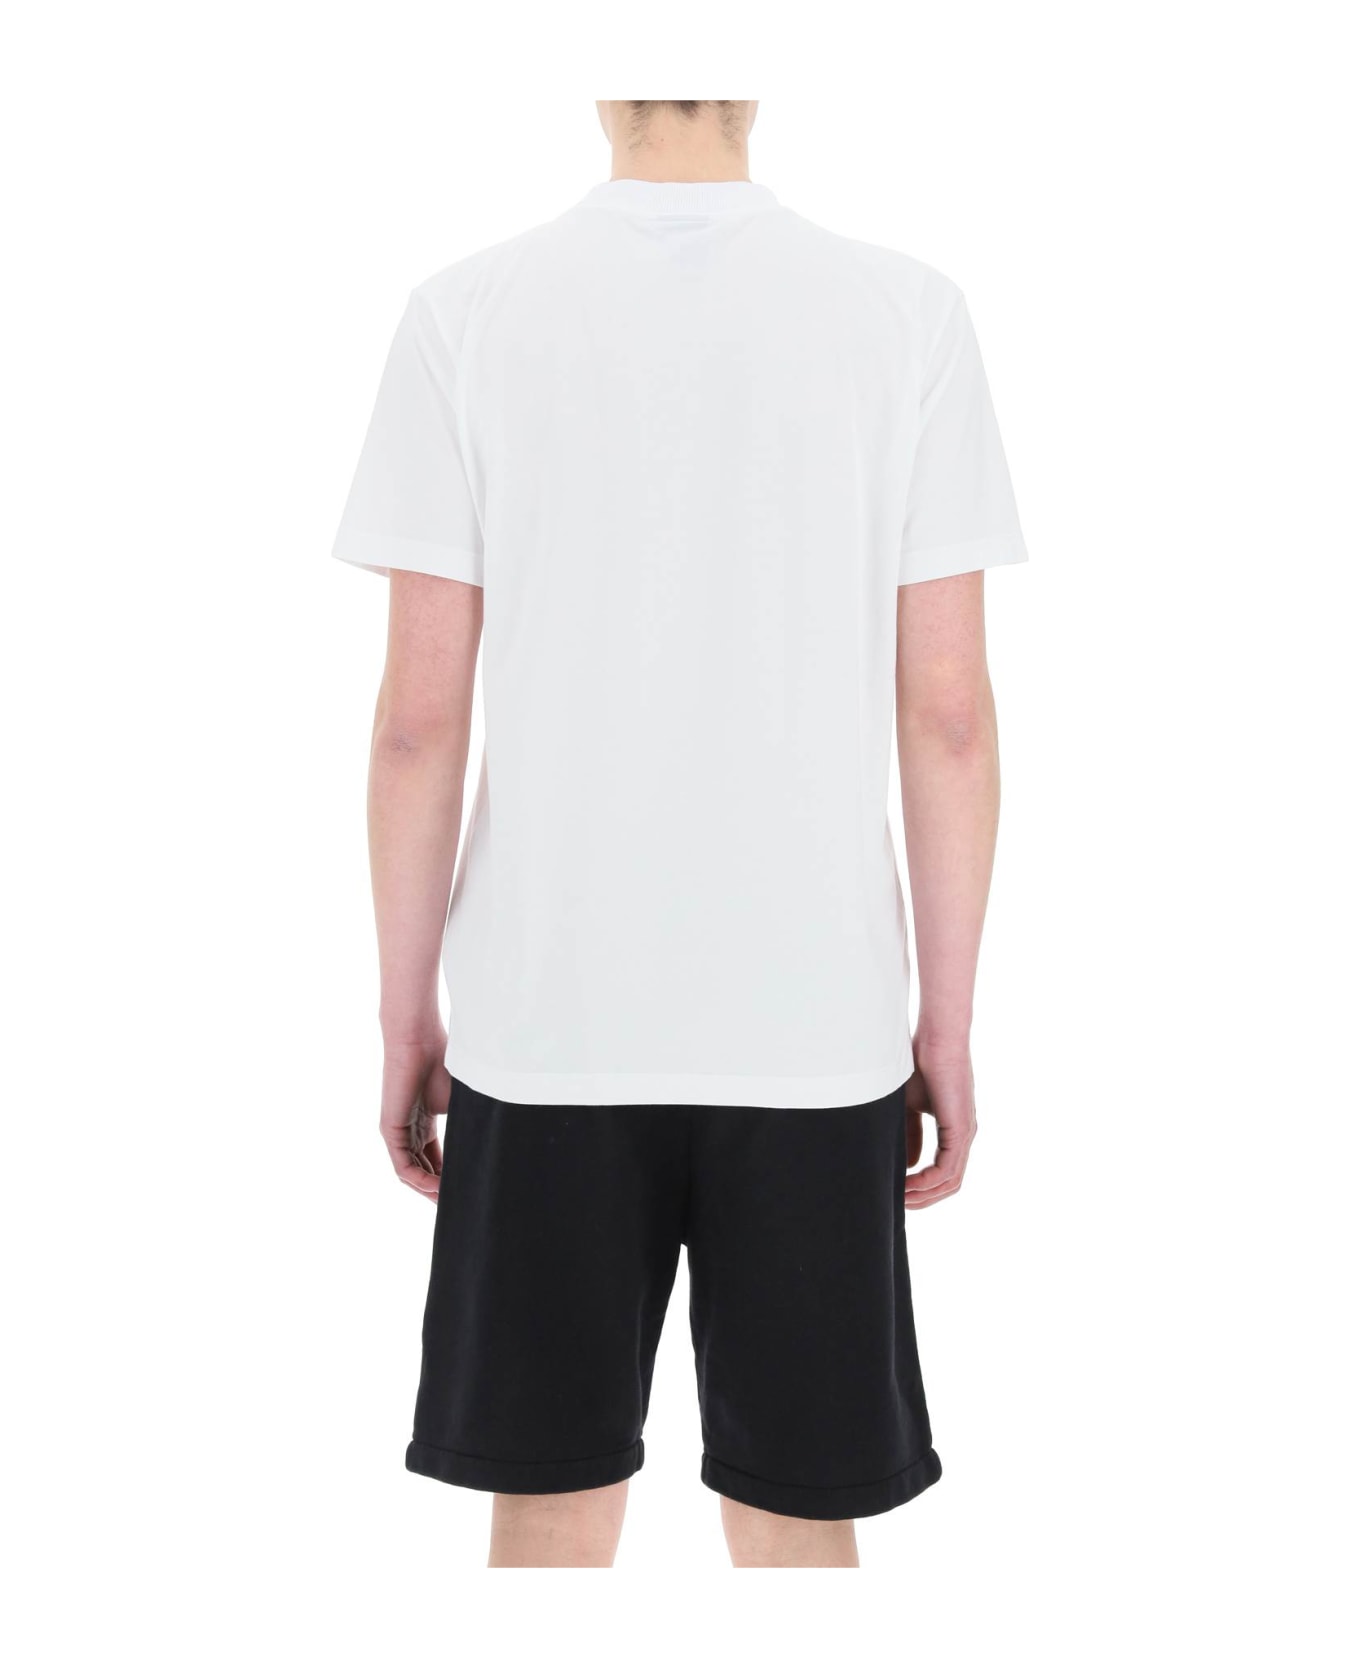 Marcelo Burlon Cross T-shirt - White シャツ